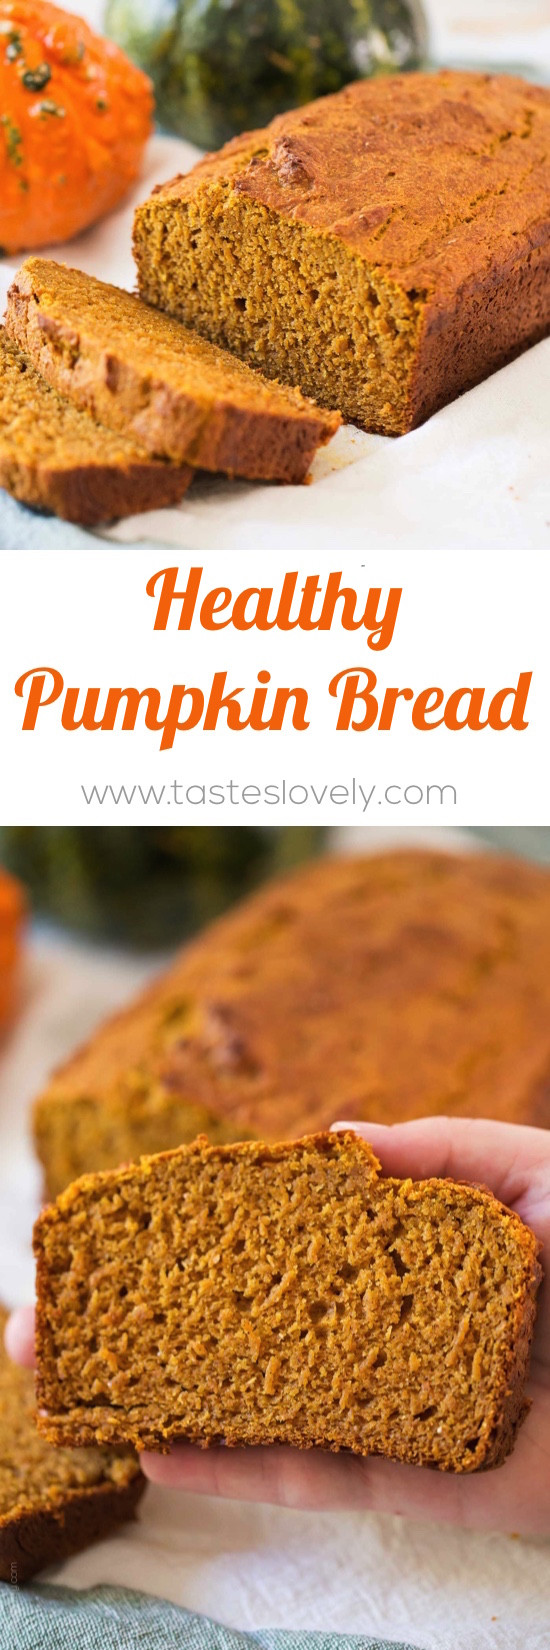 Is Pumpkin Bread Healthy
 Healthy Pumpkin Bread — Tastes Lovely